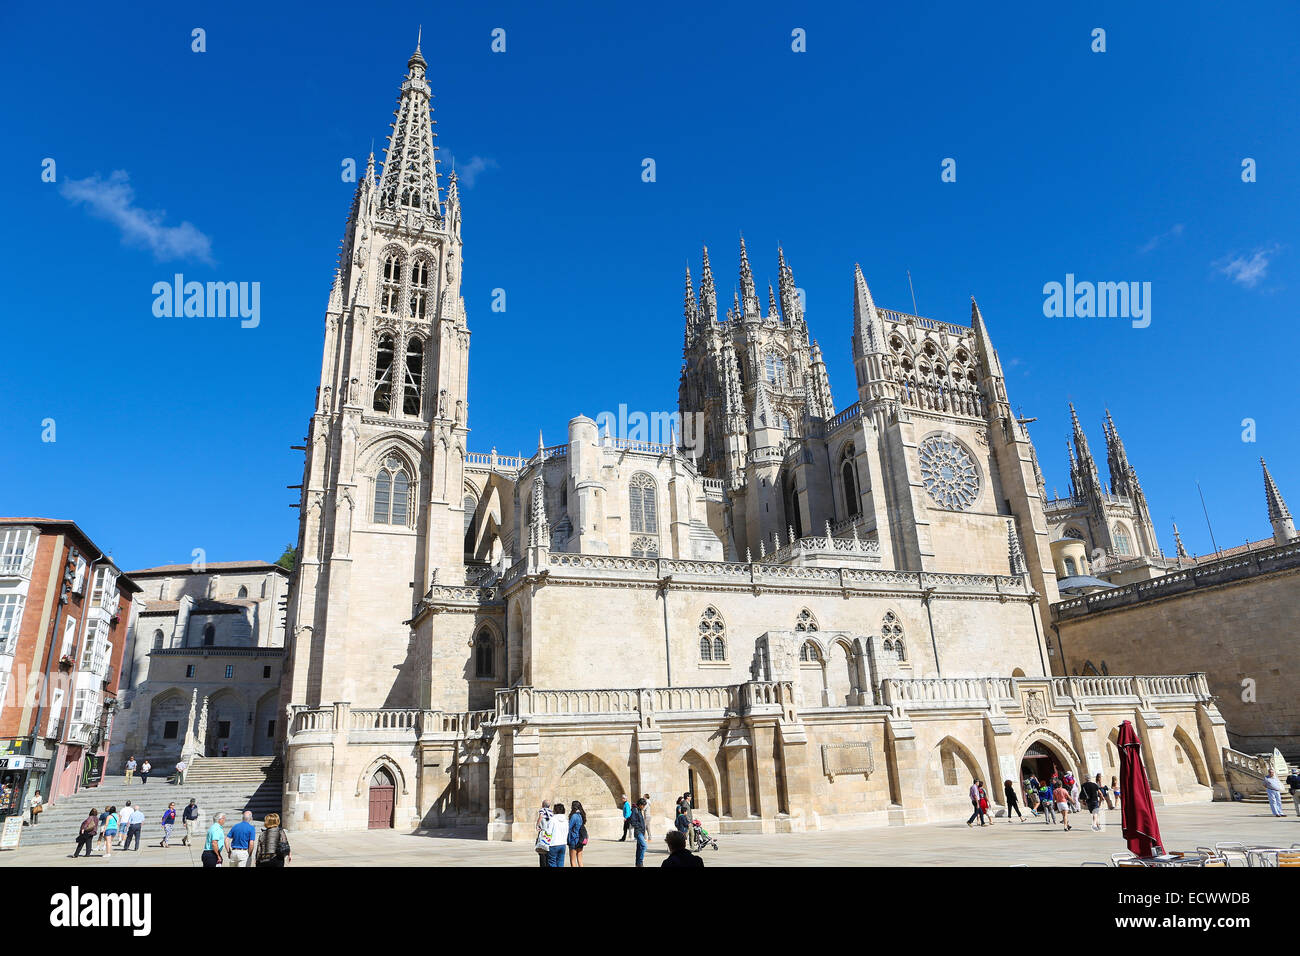 BURGOS, Spagna - 13 agosto 2014: famosa cattedrale gotica di Burgos, Castille, Spagna. Foto Stock